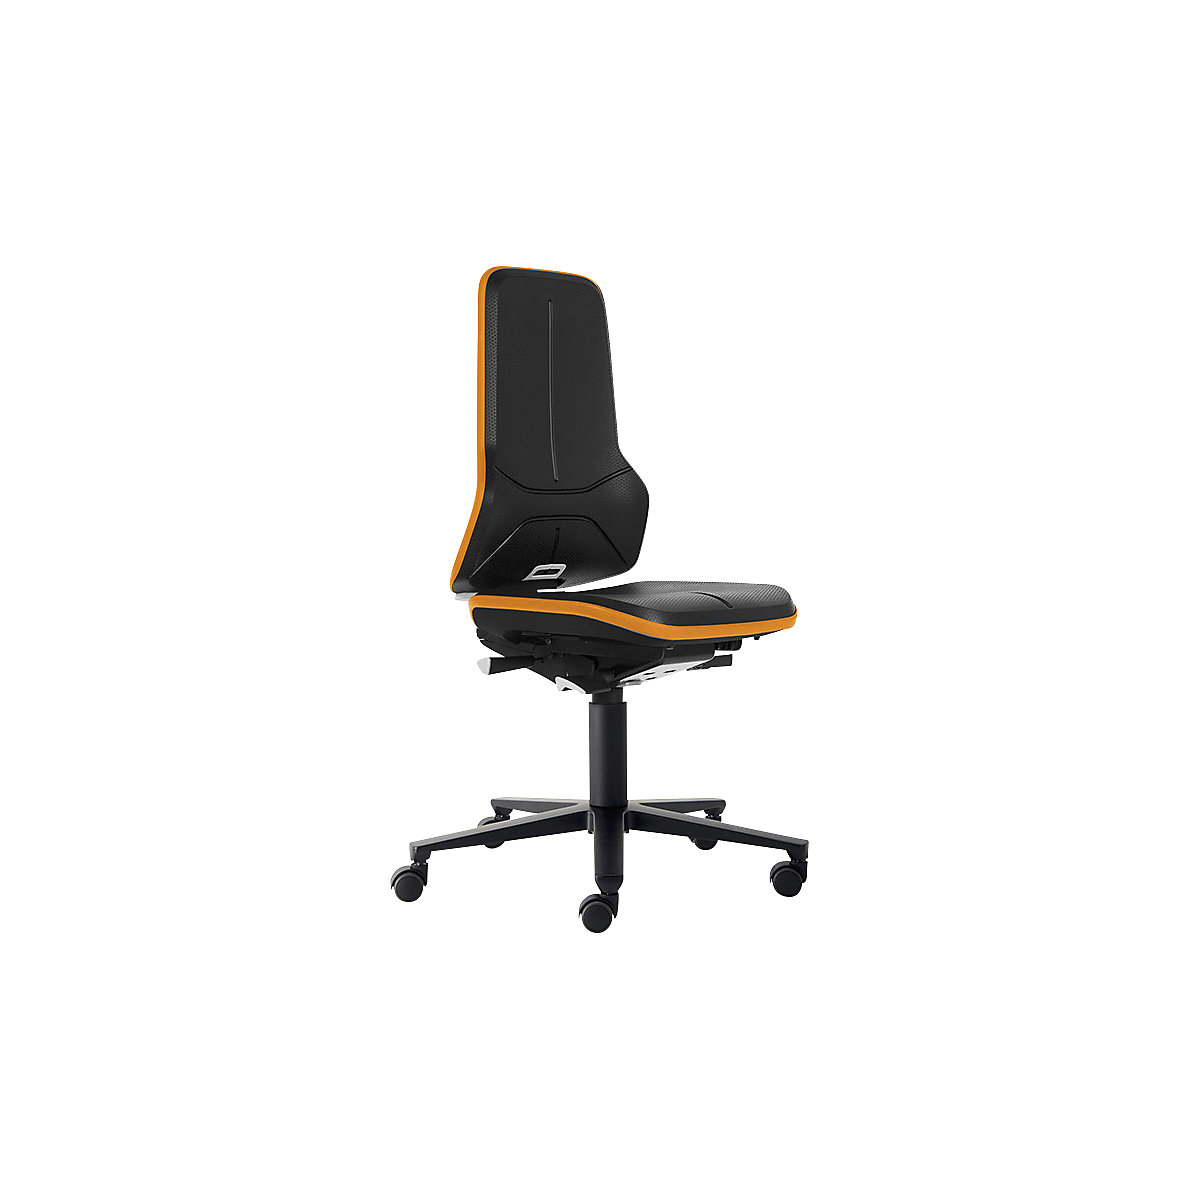 NEON pracovná otočná stolička ESD, kolieska – bimos, permanentný kontakt, PU pena, flexibilná páska oranžová-3